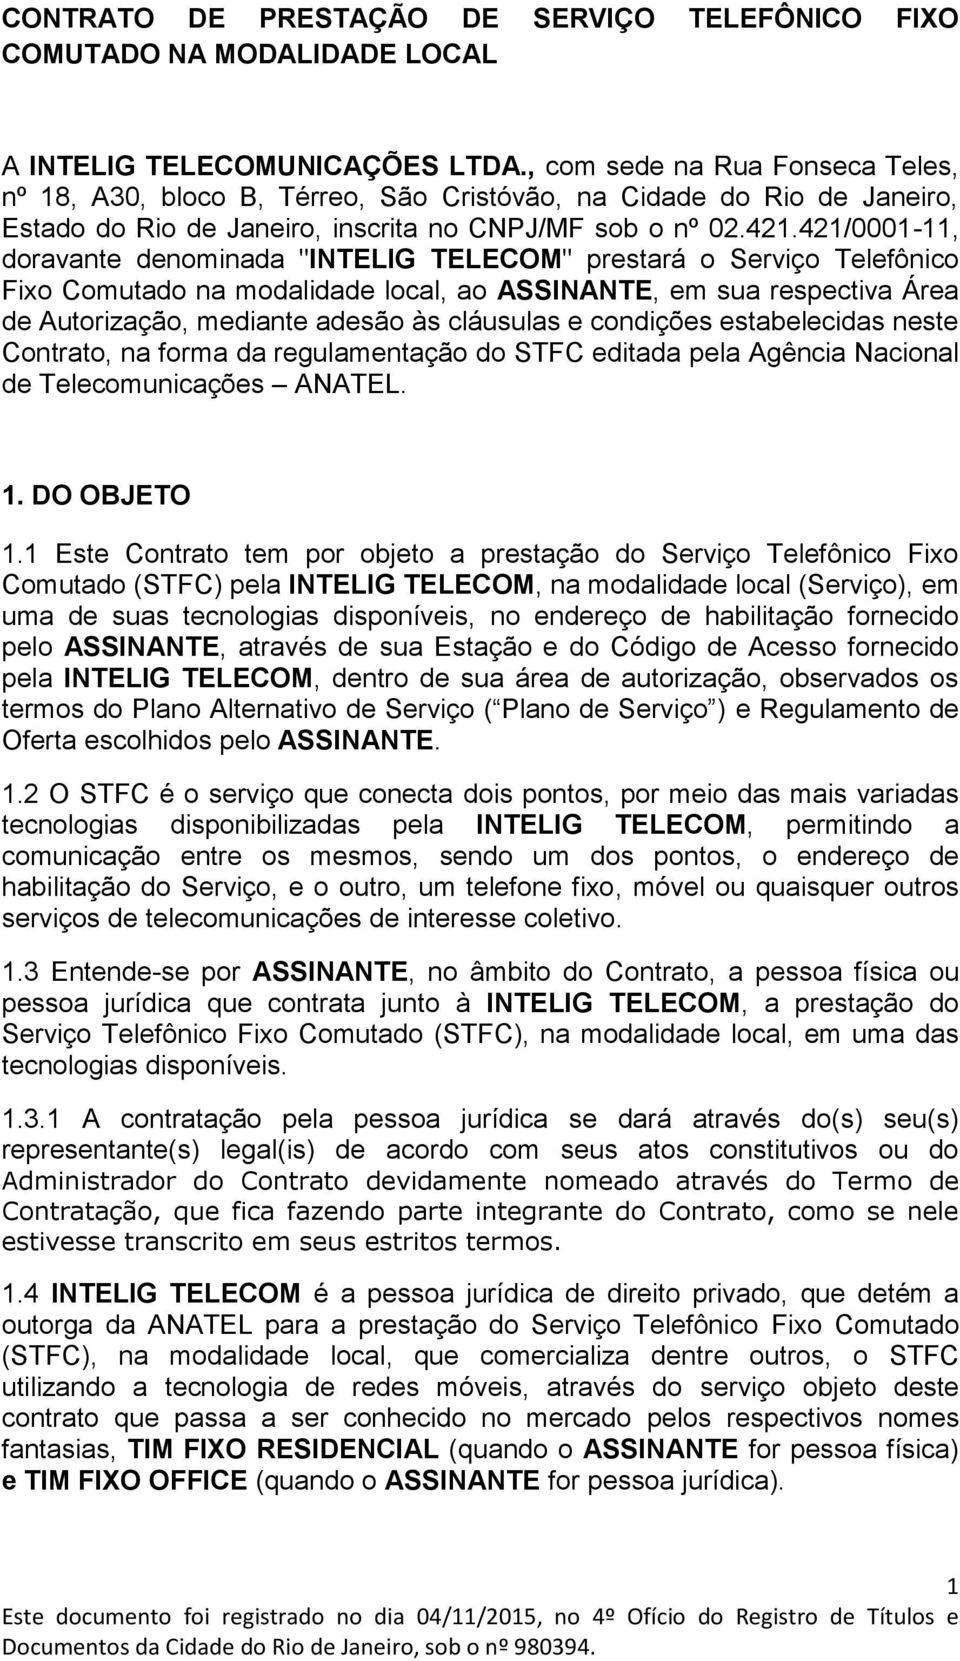 421/0001-11, doravante denominada "INTELIG TELECOM" prestará o Serviço Telefônico Fixo Comutado na modalidade local, ao ASSINANTE, em sua respectiva Área de Autorização, mediante adesão às cláusulas